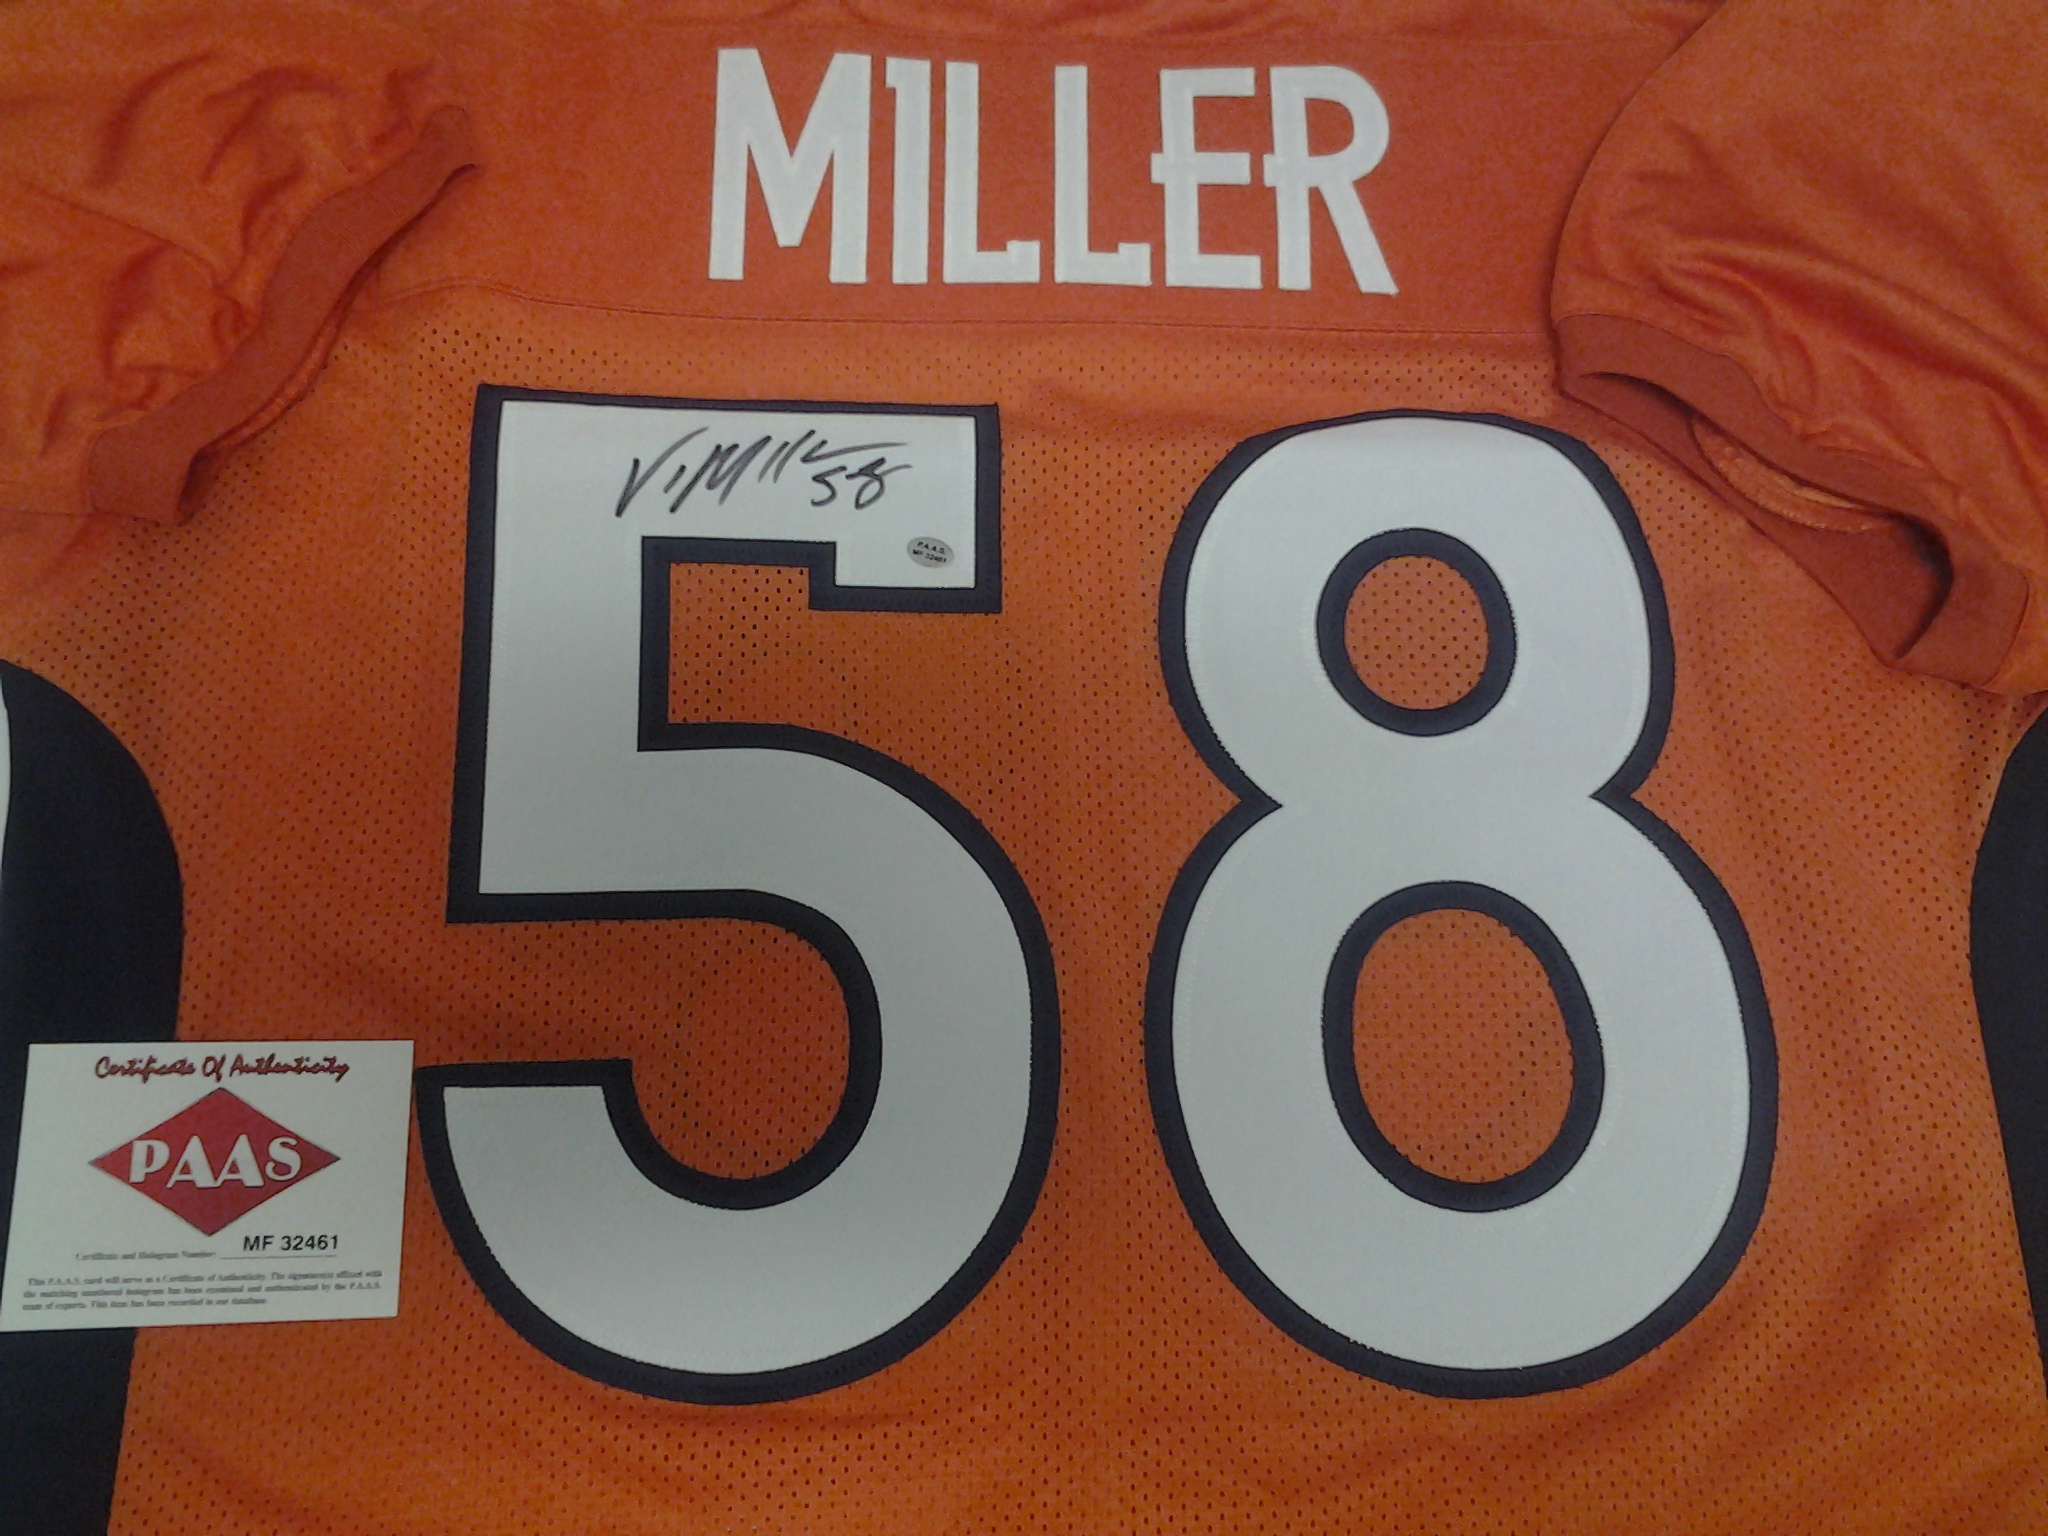 von miller autographed jersey